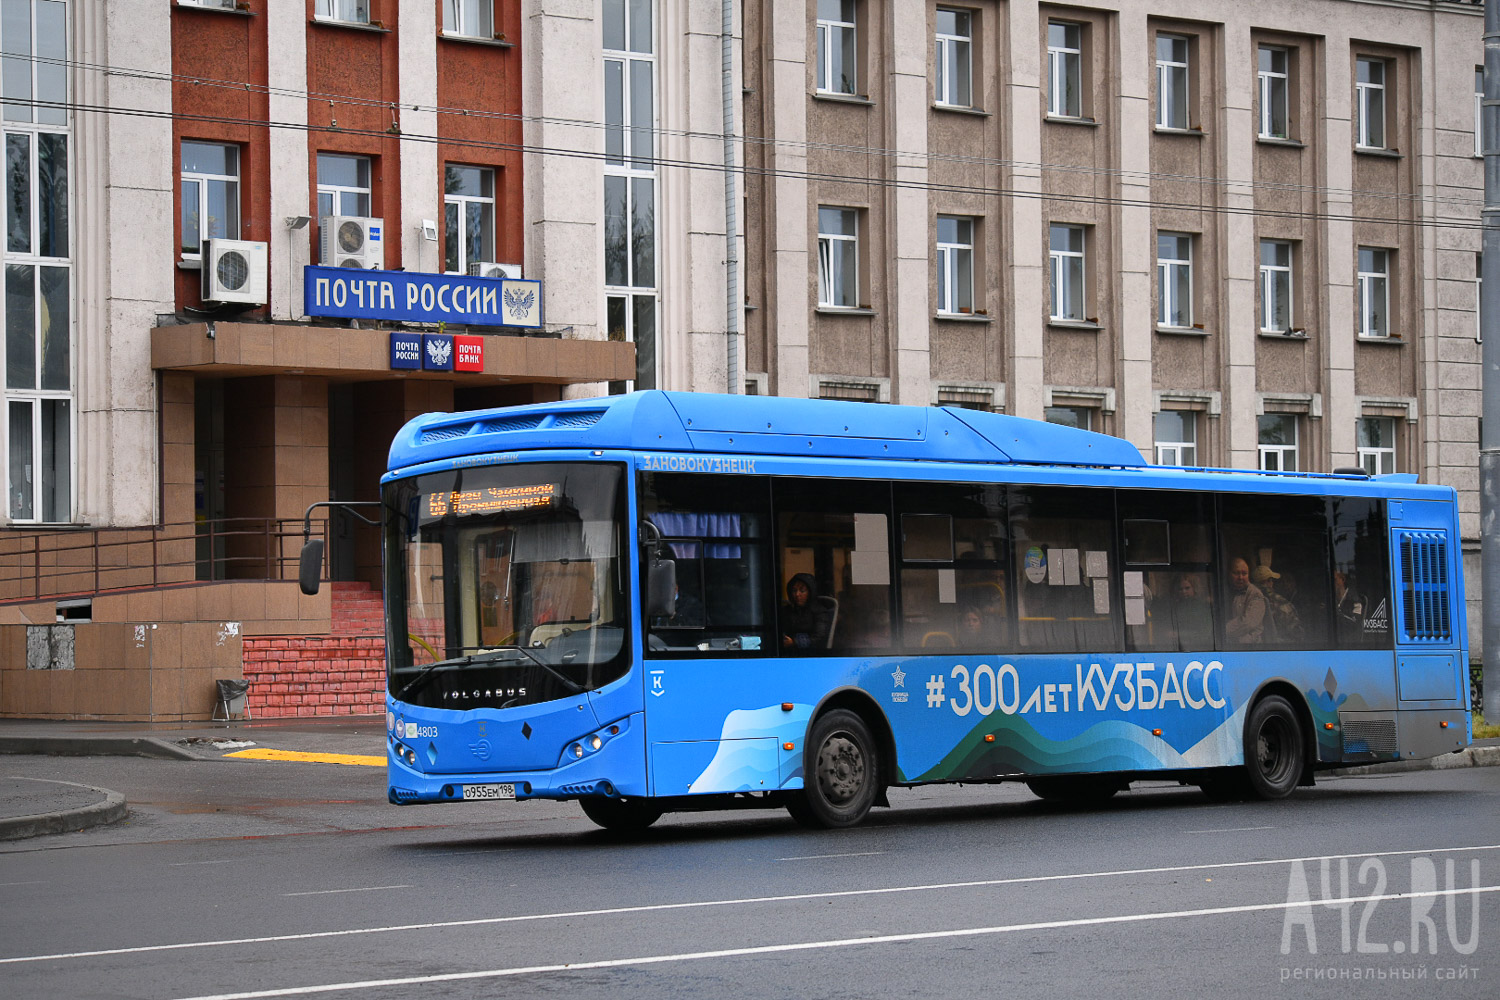 Отказался ехать дальше: новокузнечане пожаловались на неадекватное поведение водителя автобуса